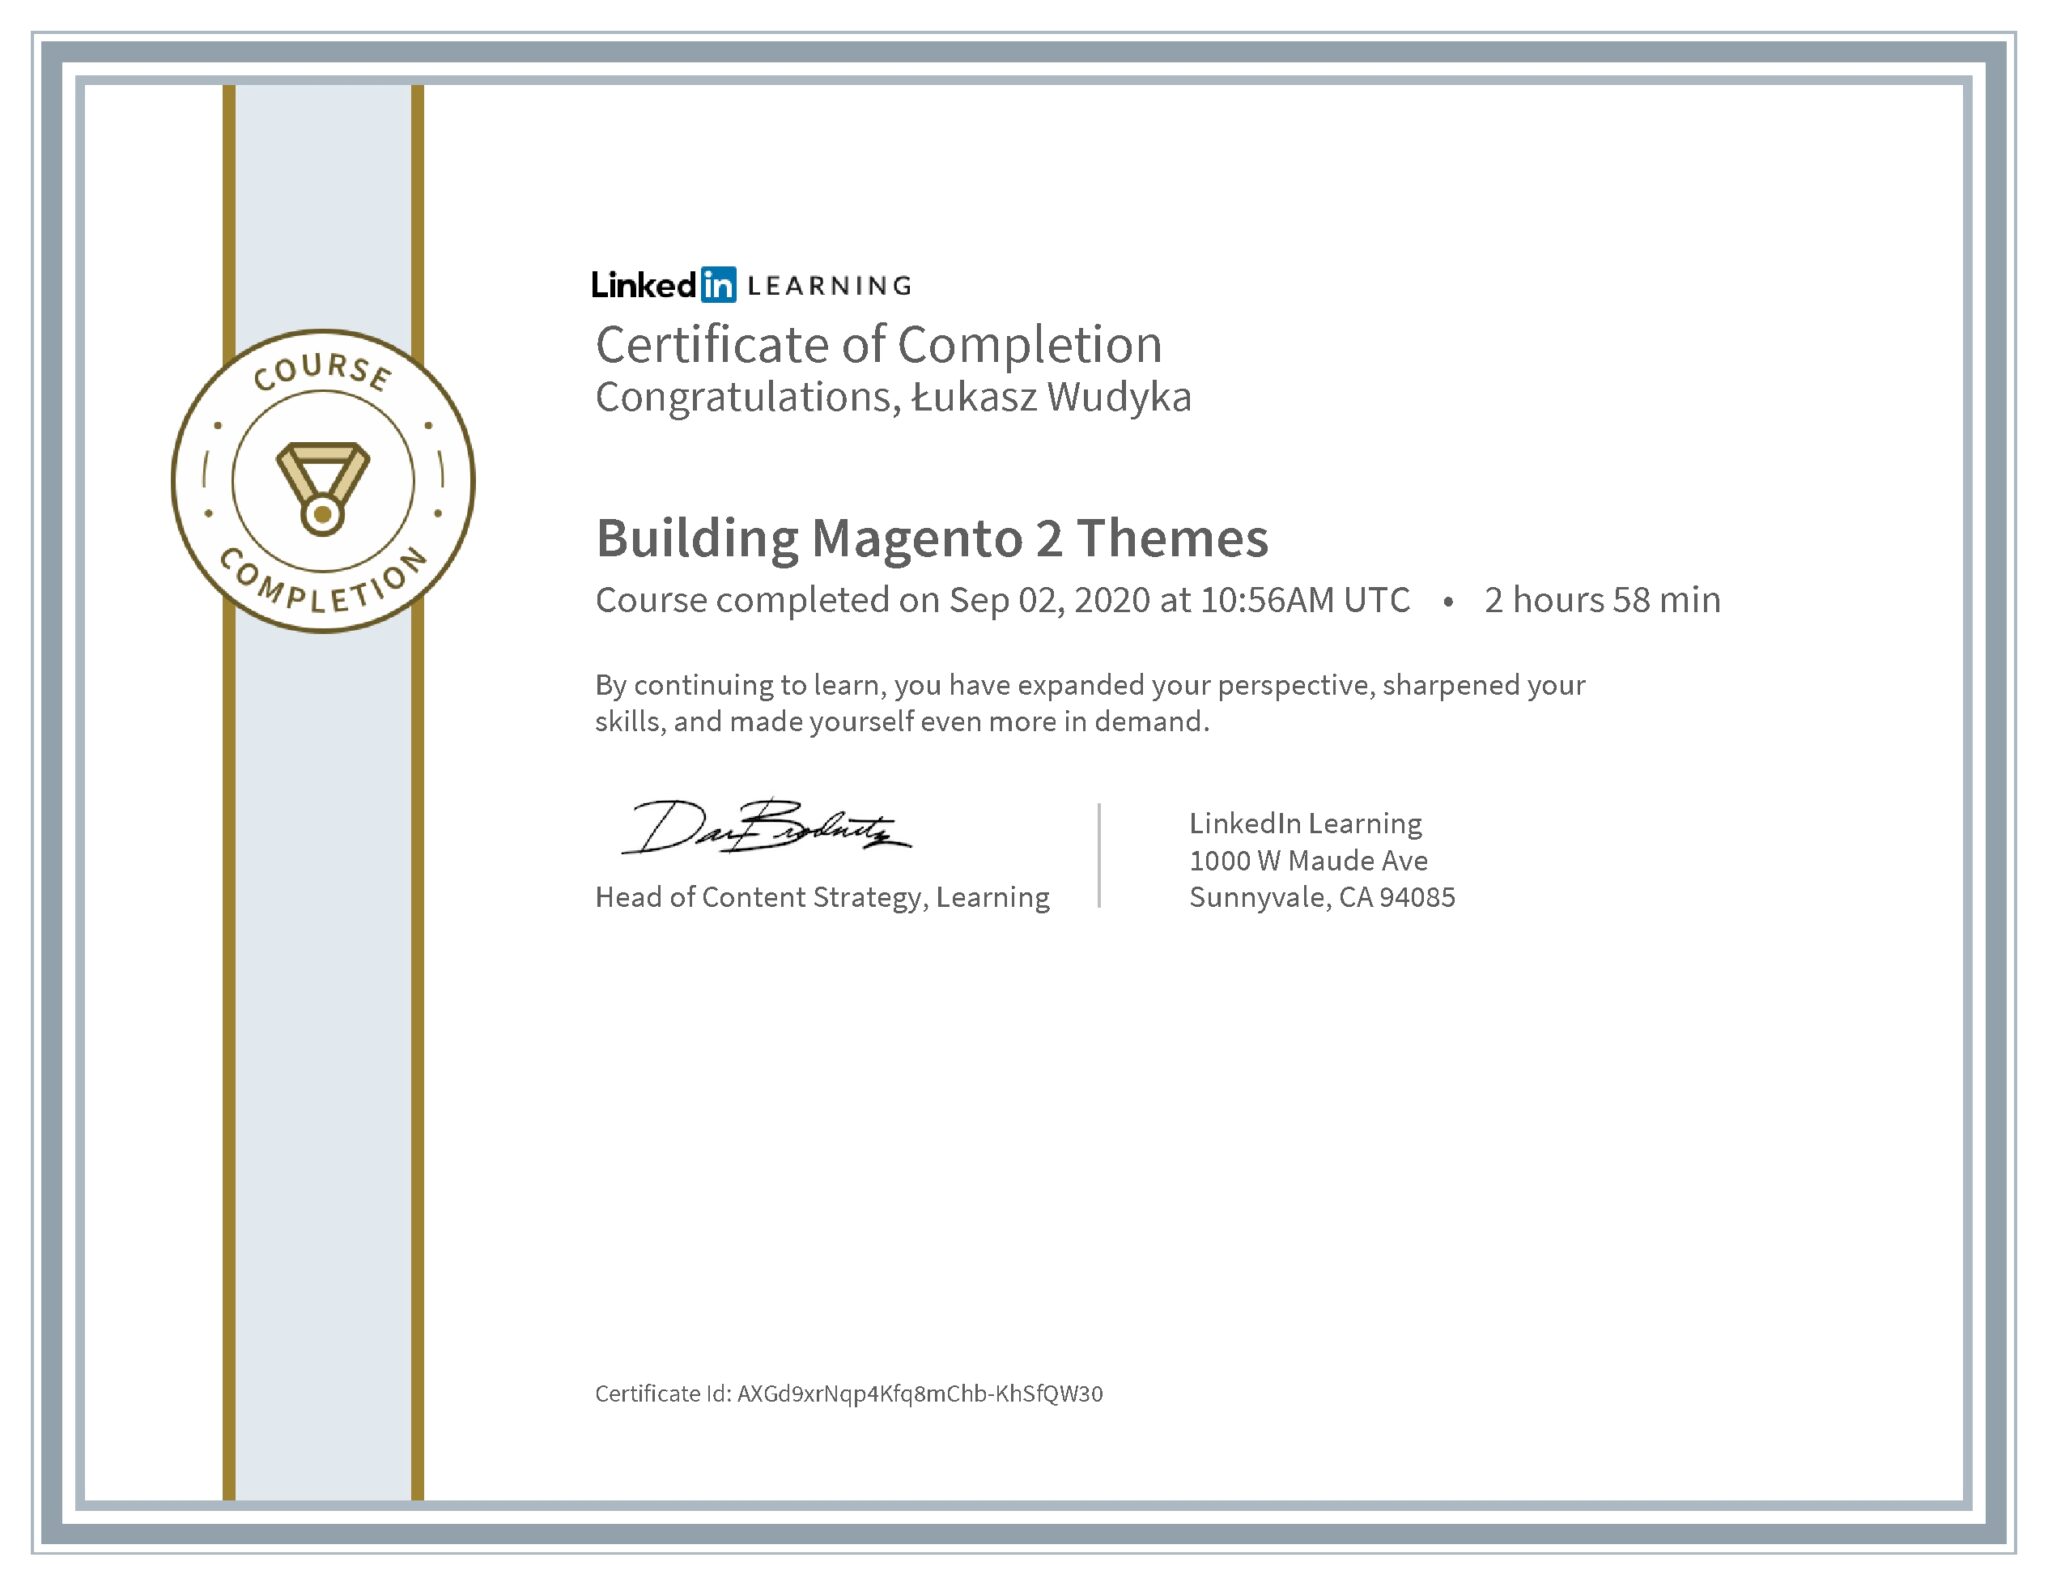 Łukasz Wudyka certyfikat LinkedIn Building Magento 2 Themes